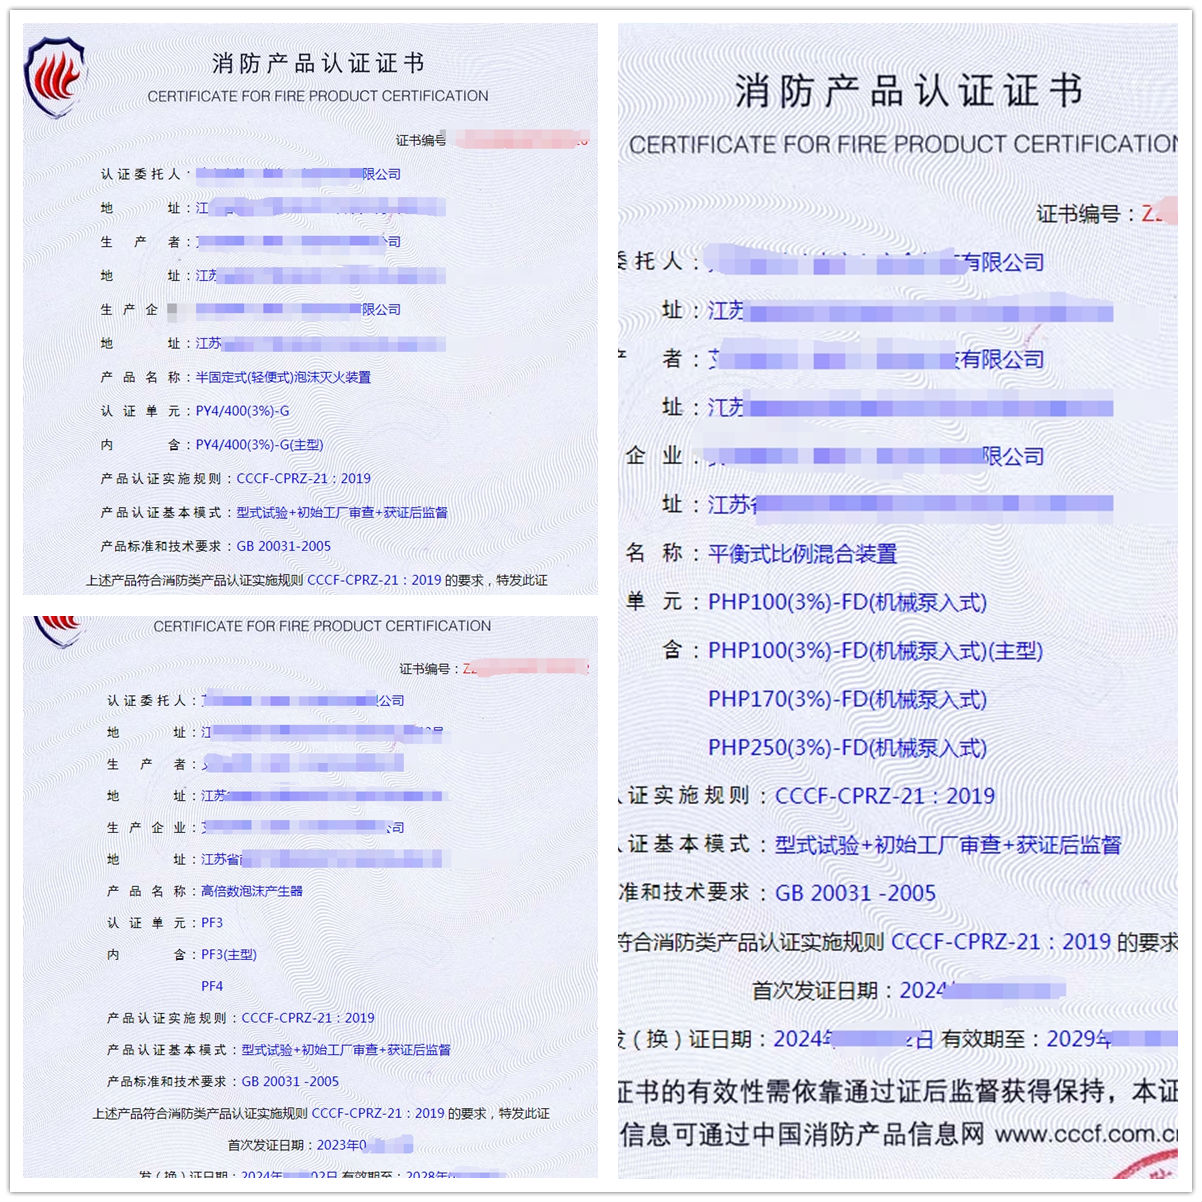 南京高倍数泡沫产生器、平衡式比例混合装置消防认证证书